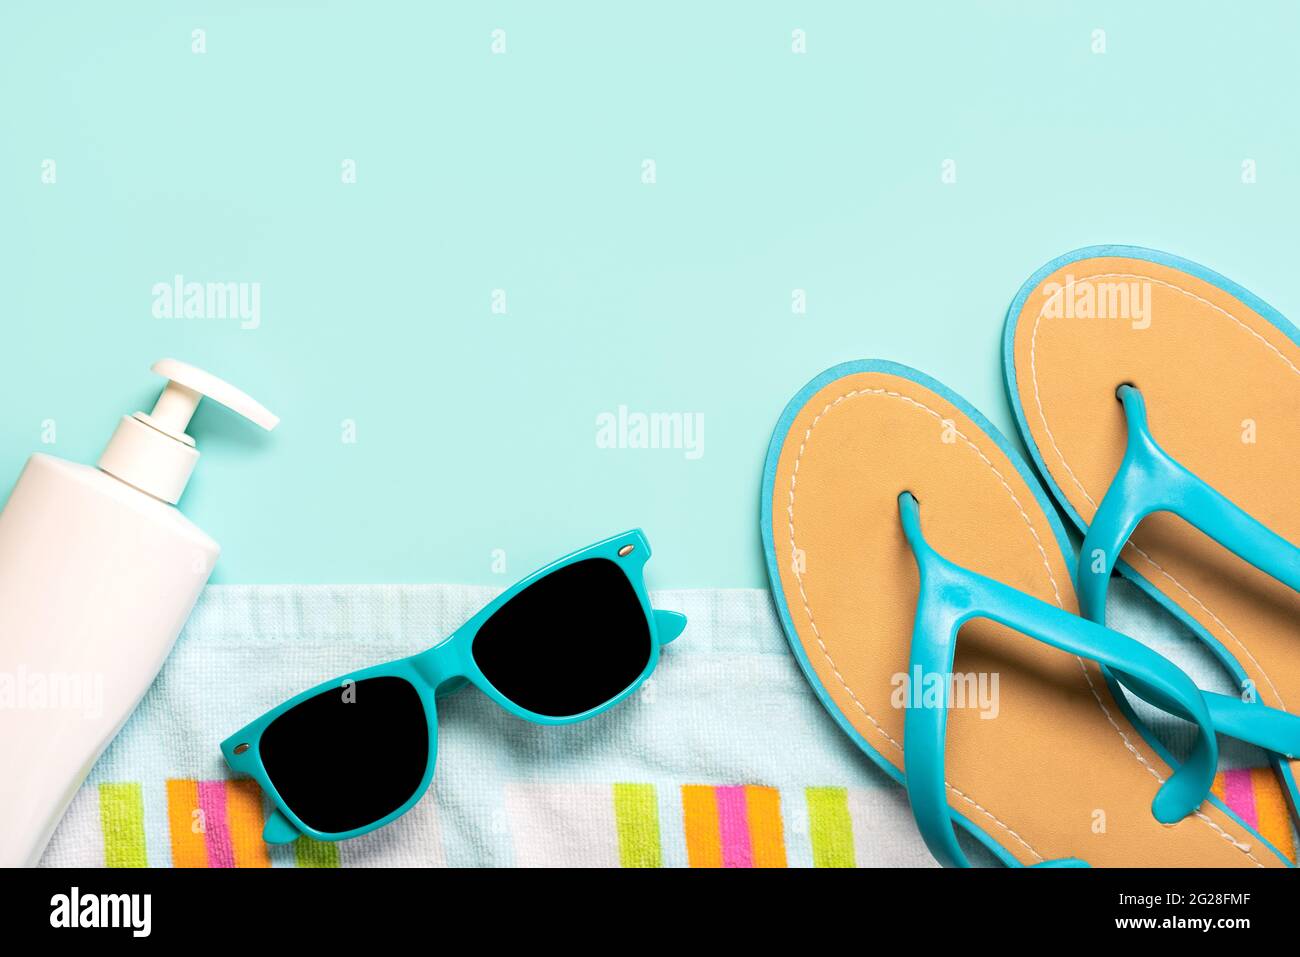 Sommerferienkonzept.Draufsicht auf blaue Flip Flops, Strandtuch, blaue Sonnenbrille und eine Flasche Sonnencreme mit Kopierfläche auf blauem Hintergrund Stockfoto